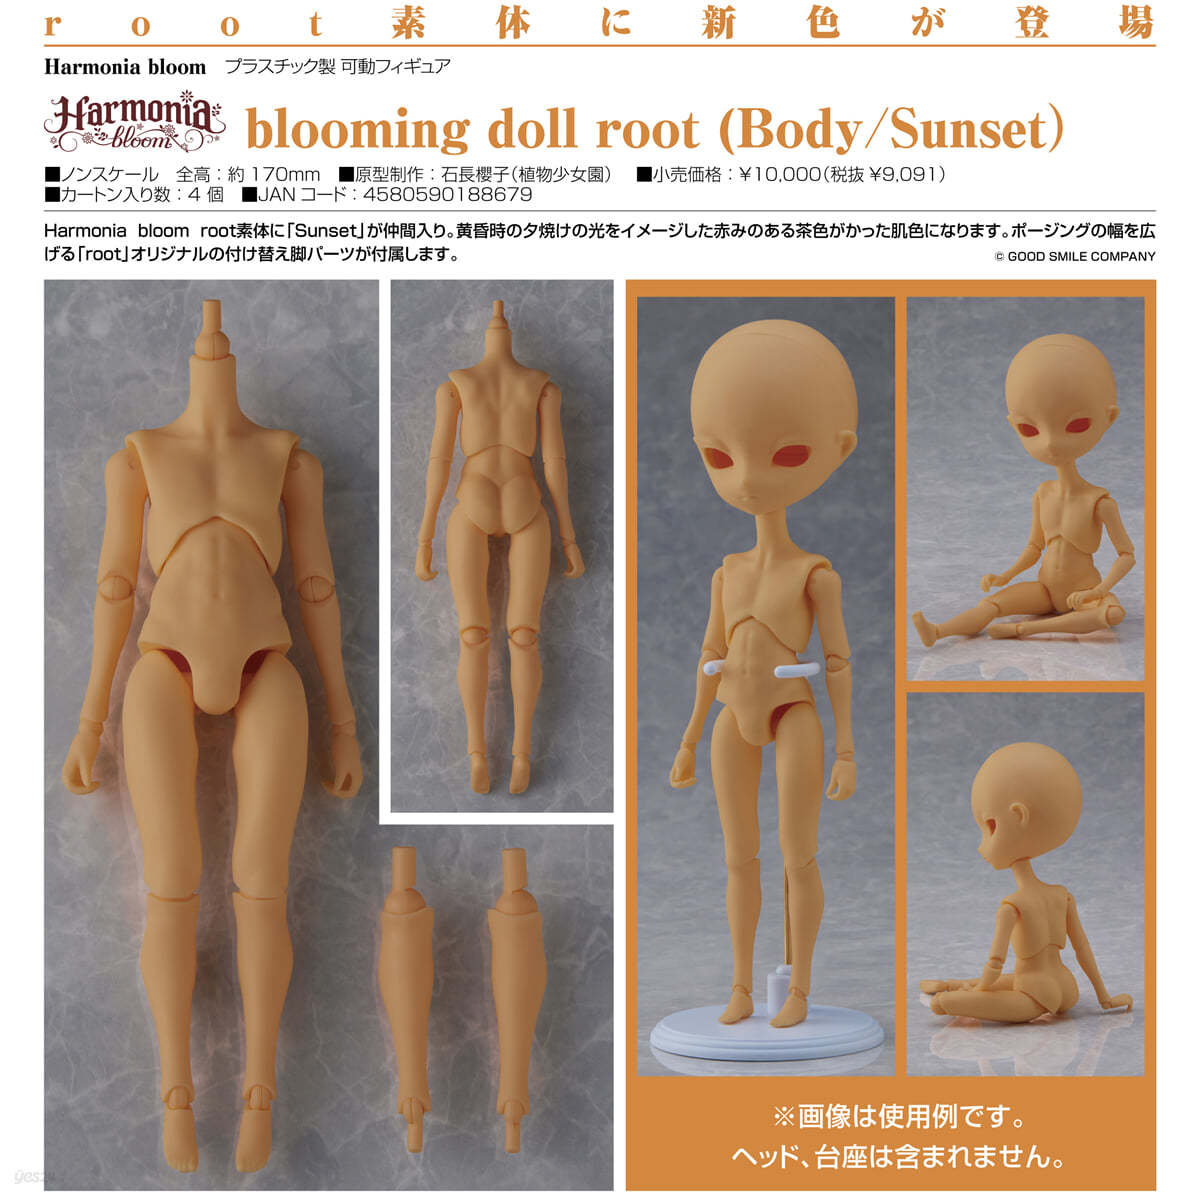 (예약도서) Harmonia bloom blooming doll root (Body/Sunset)